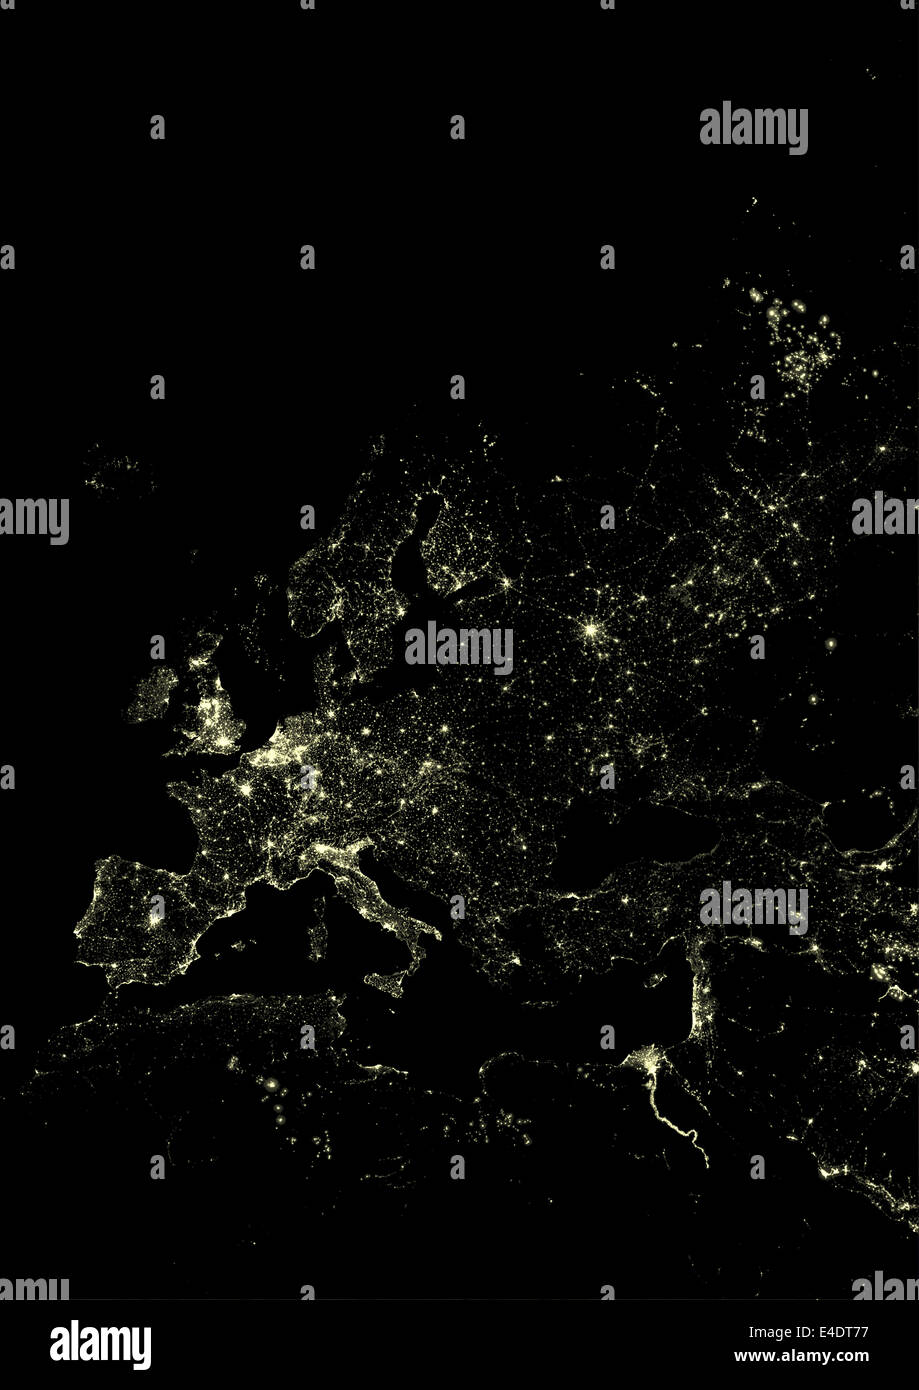 Europa occidentale di notte, un'immagine satellitare. Luci dell'Europa  occidentale di notte dallo spazio. Immagine colorata derivato dal satellite  da Foto stock - Alamy